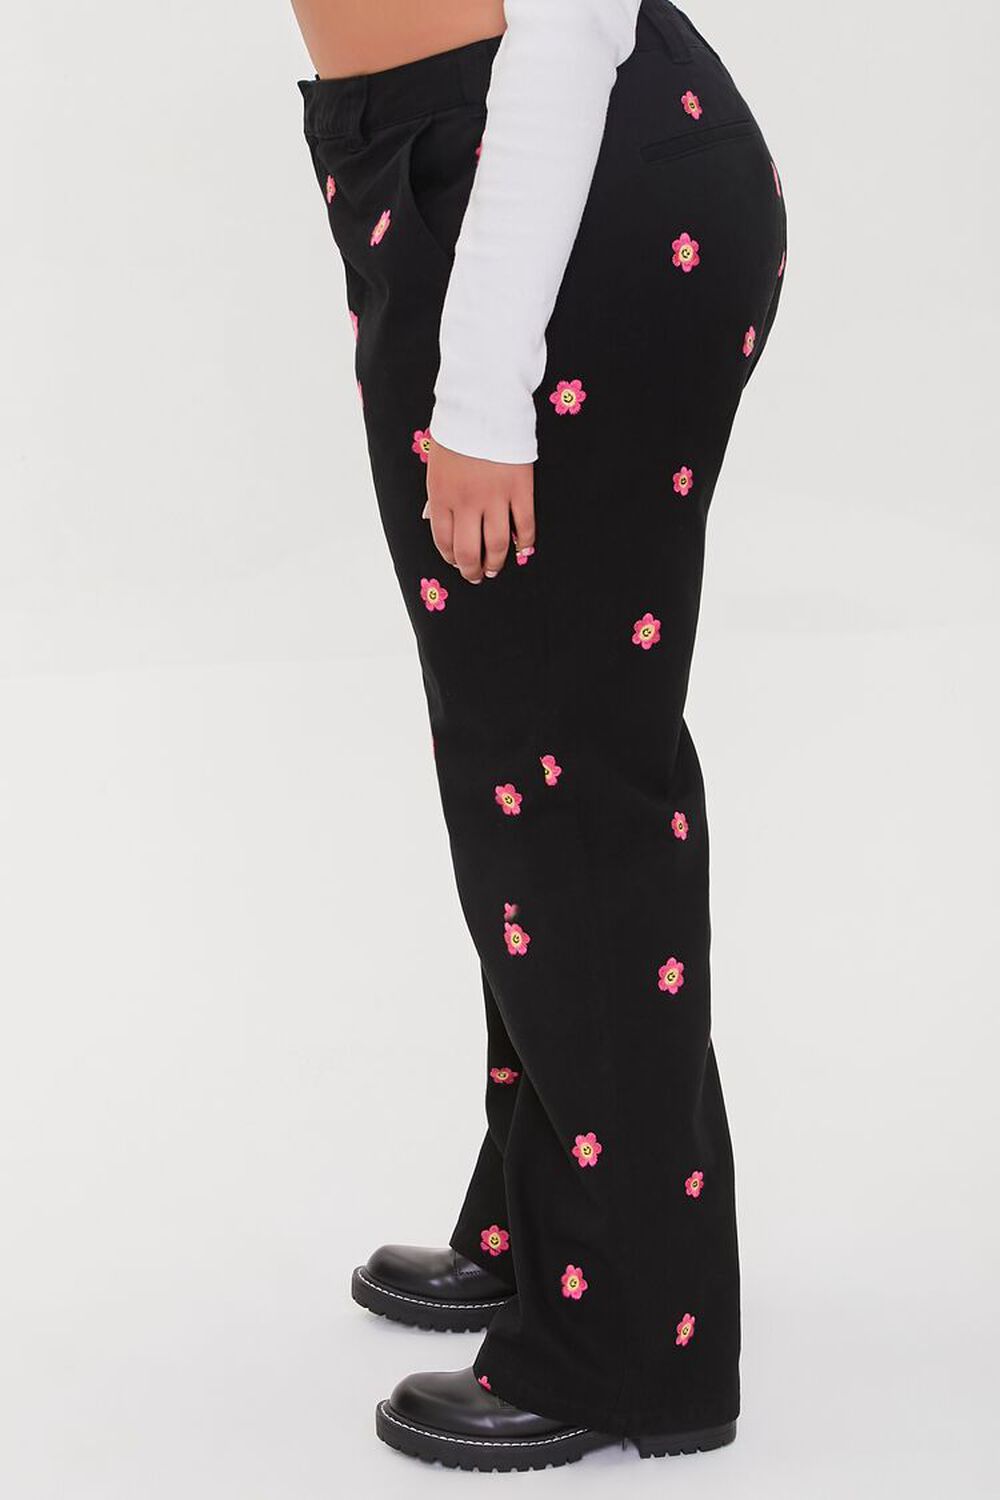 BLACK/MULTI Plus Size Happy Face Floral Print Pants, image 3